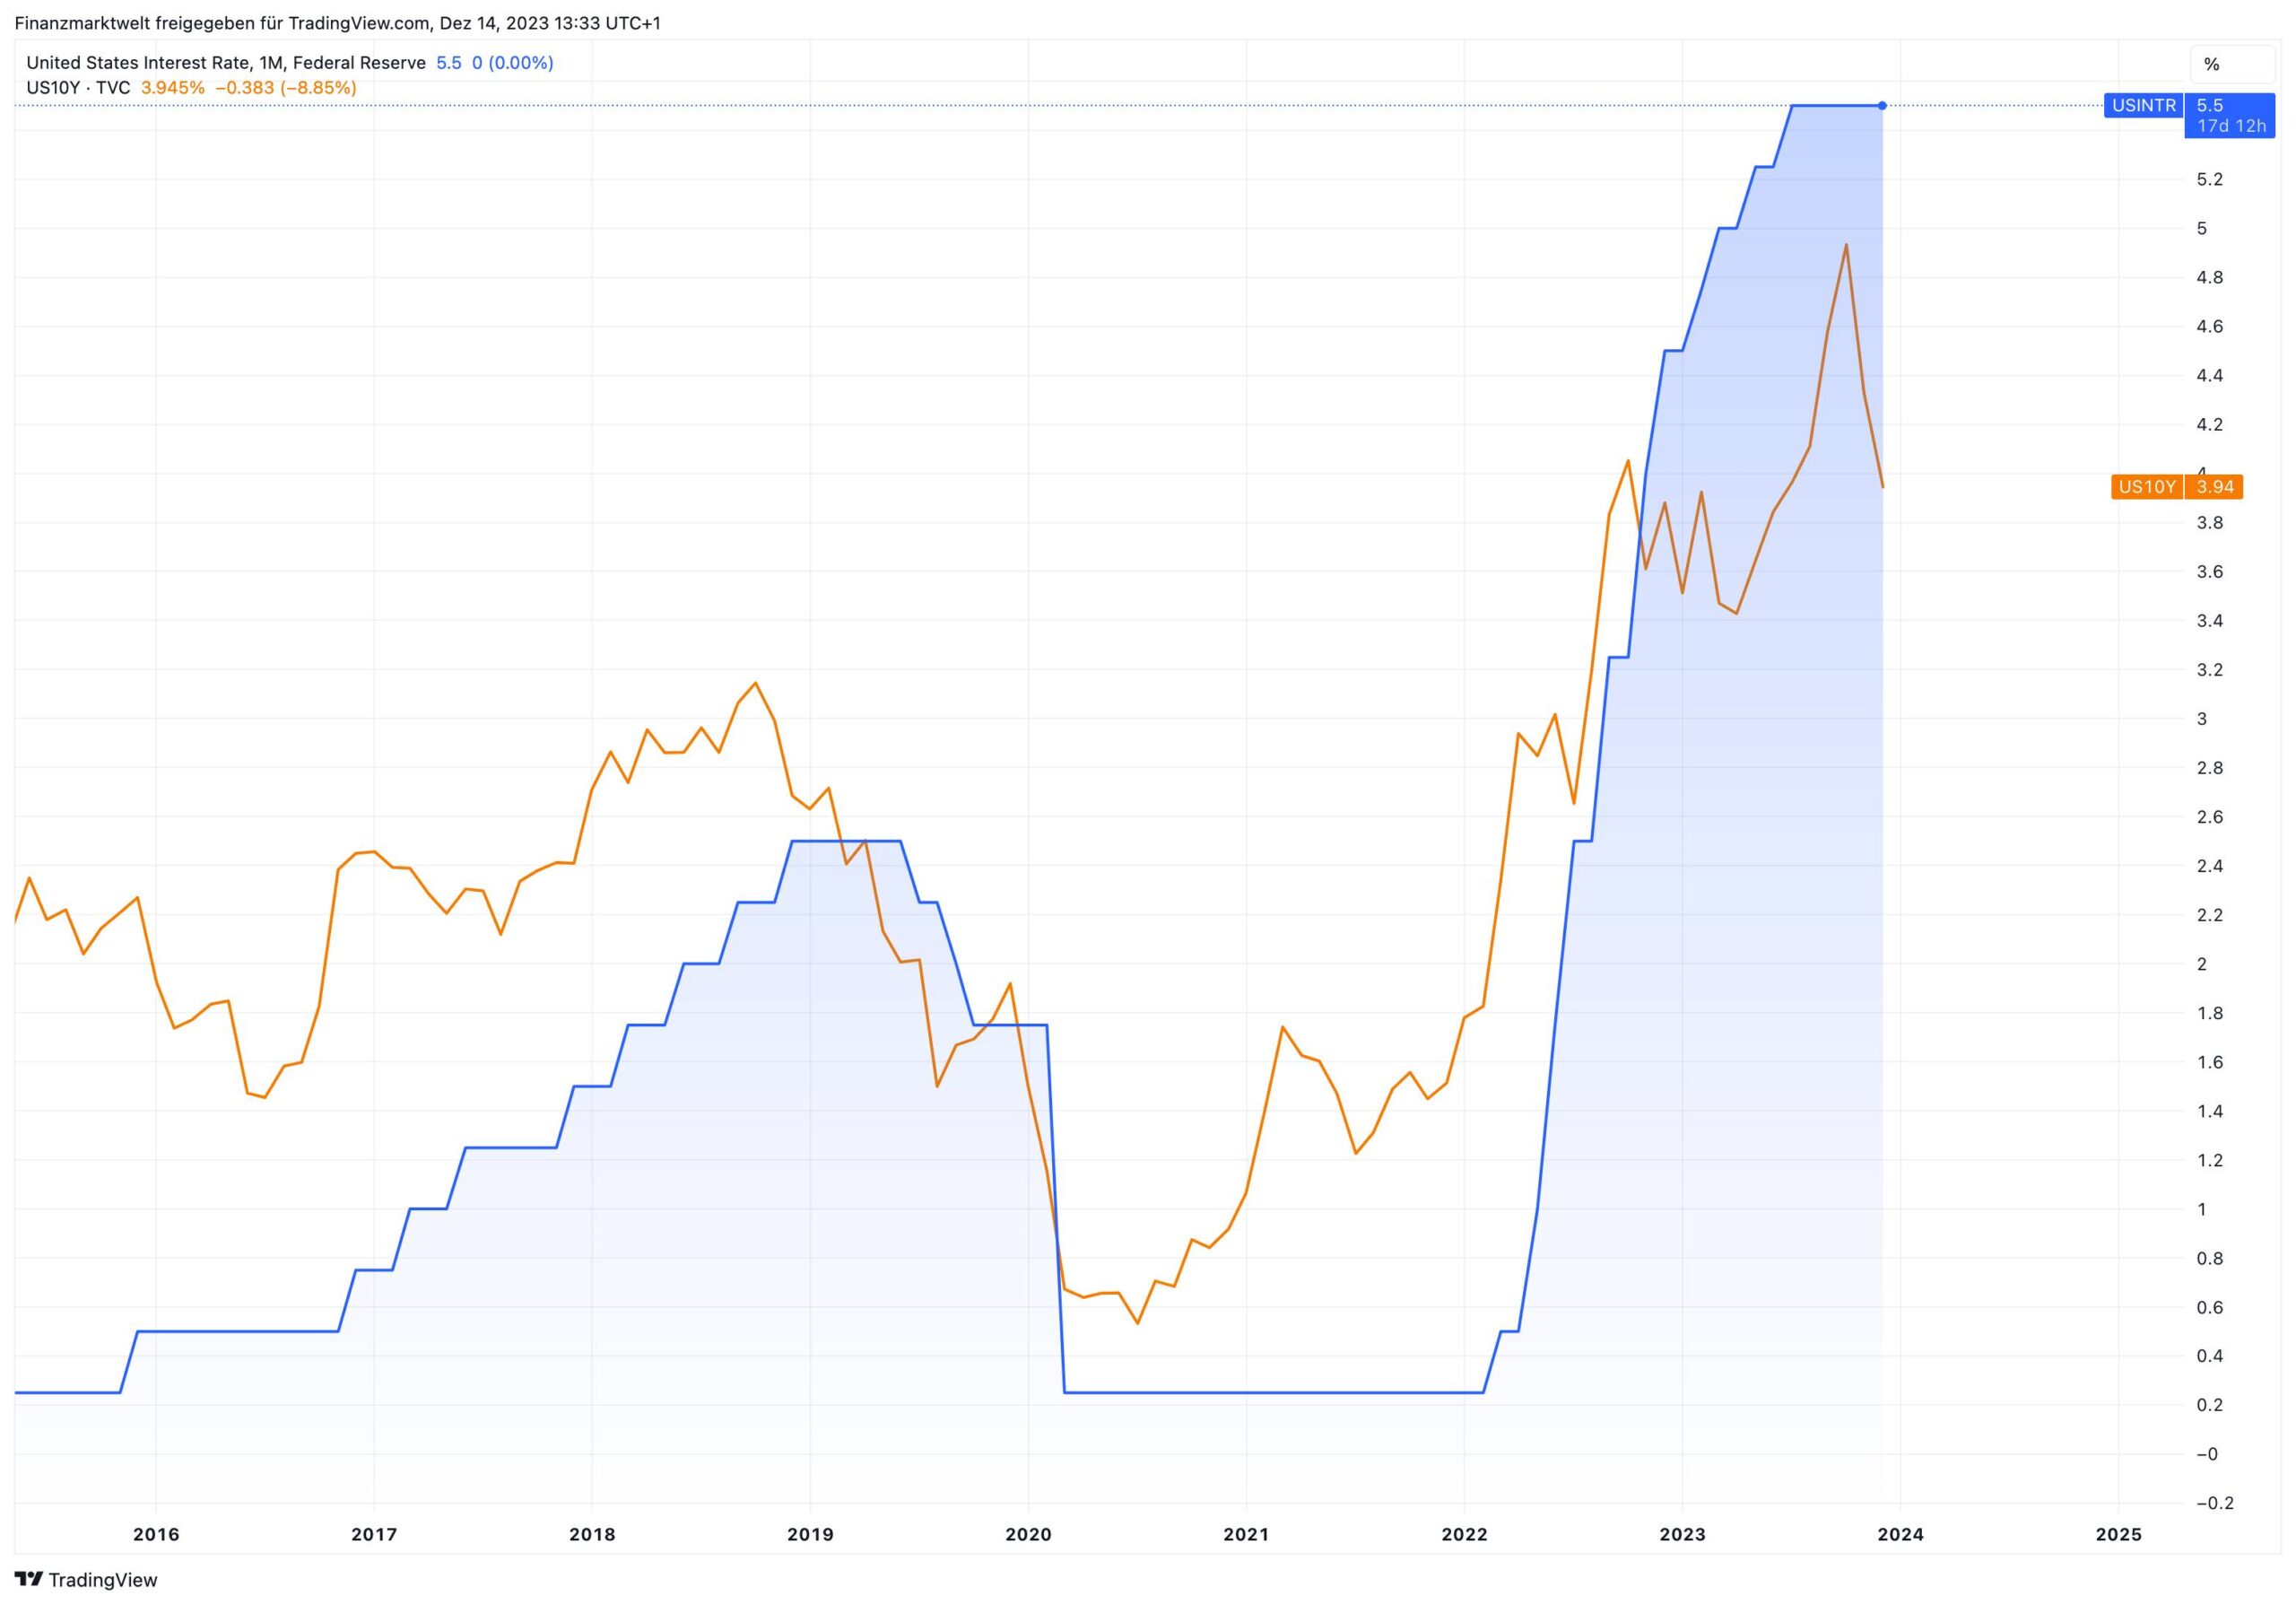 Grafik vergleicht Rendite von US-Staatsanleihen mit US-Leitzins